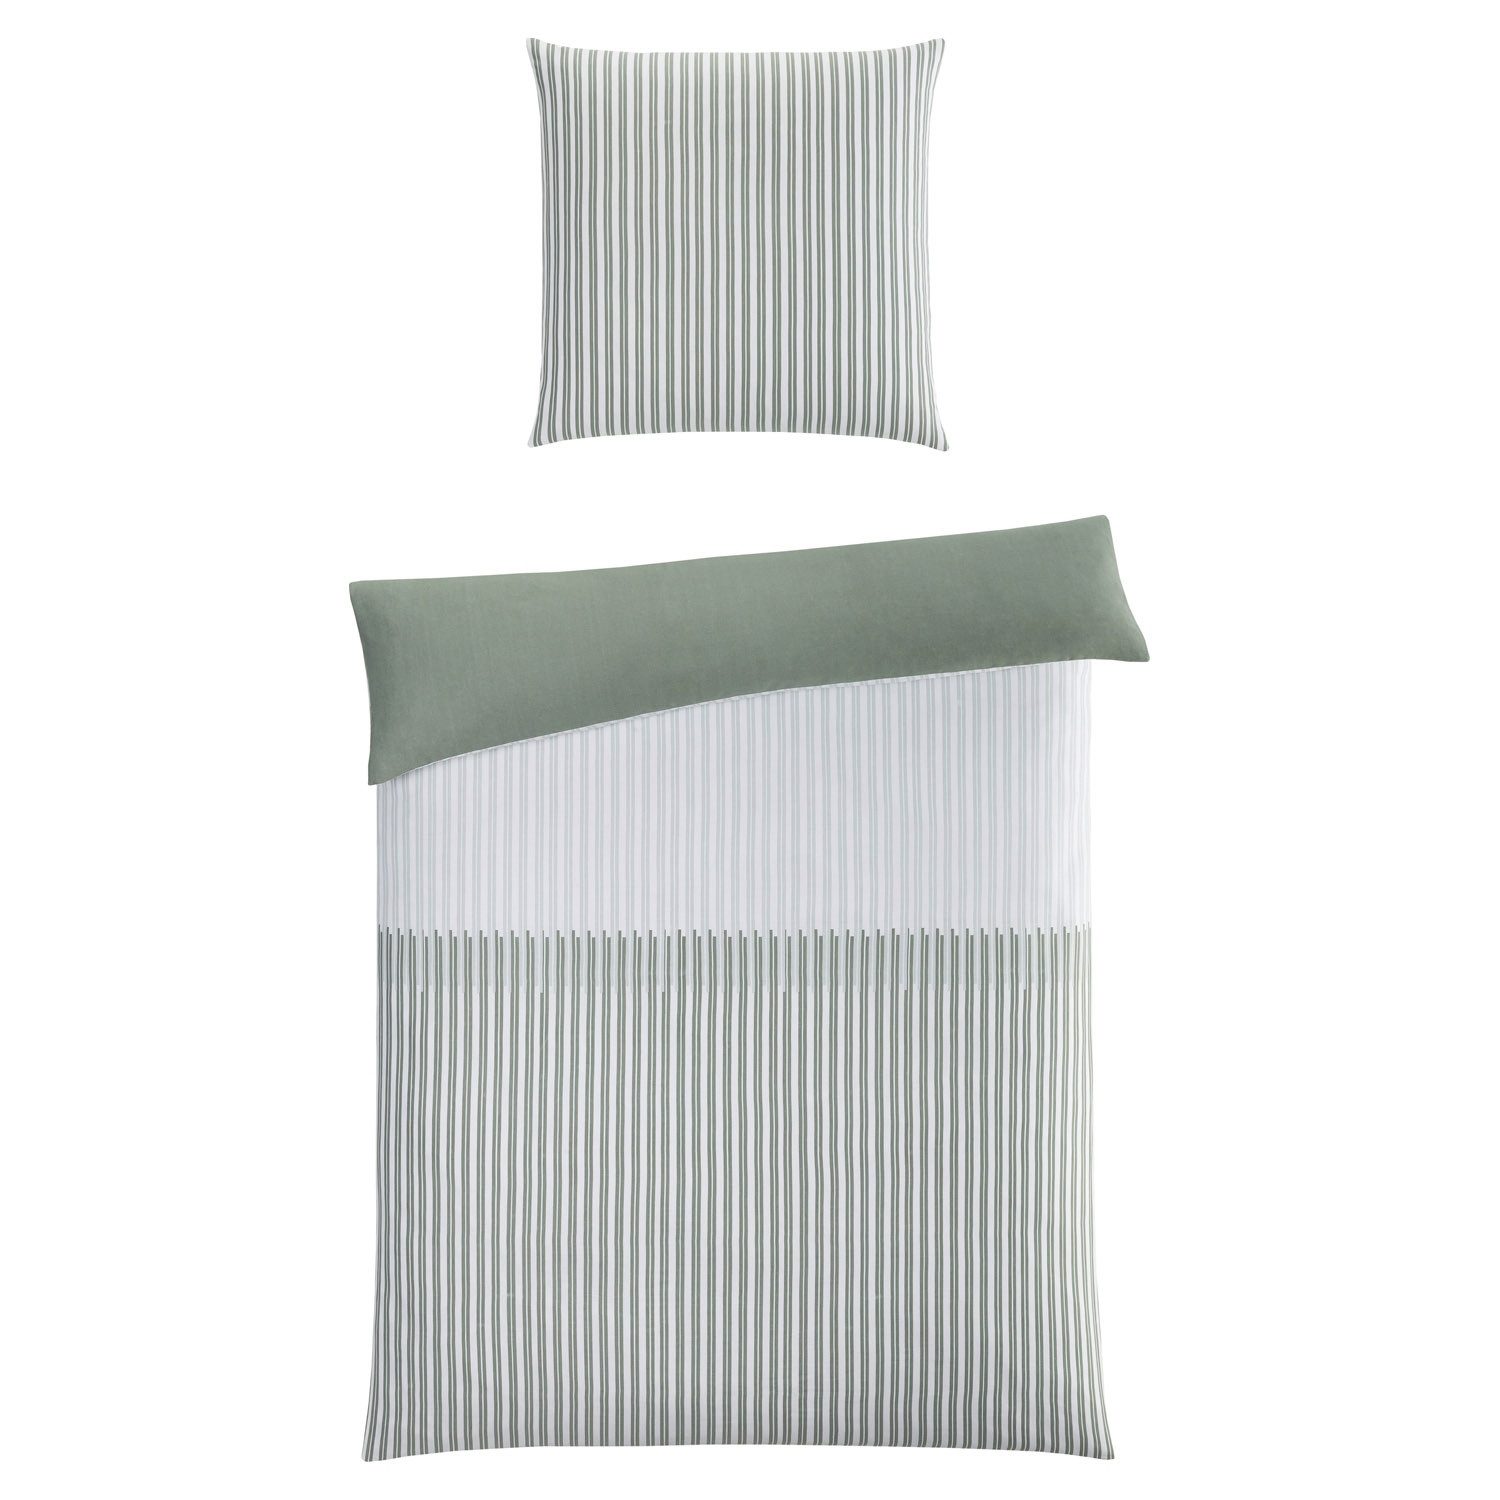 Bettwäsche TANJA, 135 x 200 cm, Grün, Weiß, Streifen, casa NOVA, Satin, 2 teilig, mit Reißverschluss